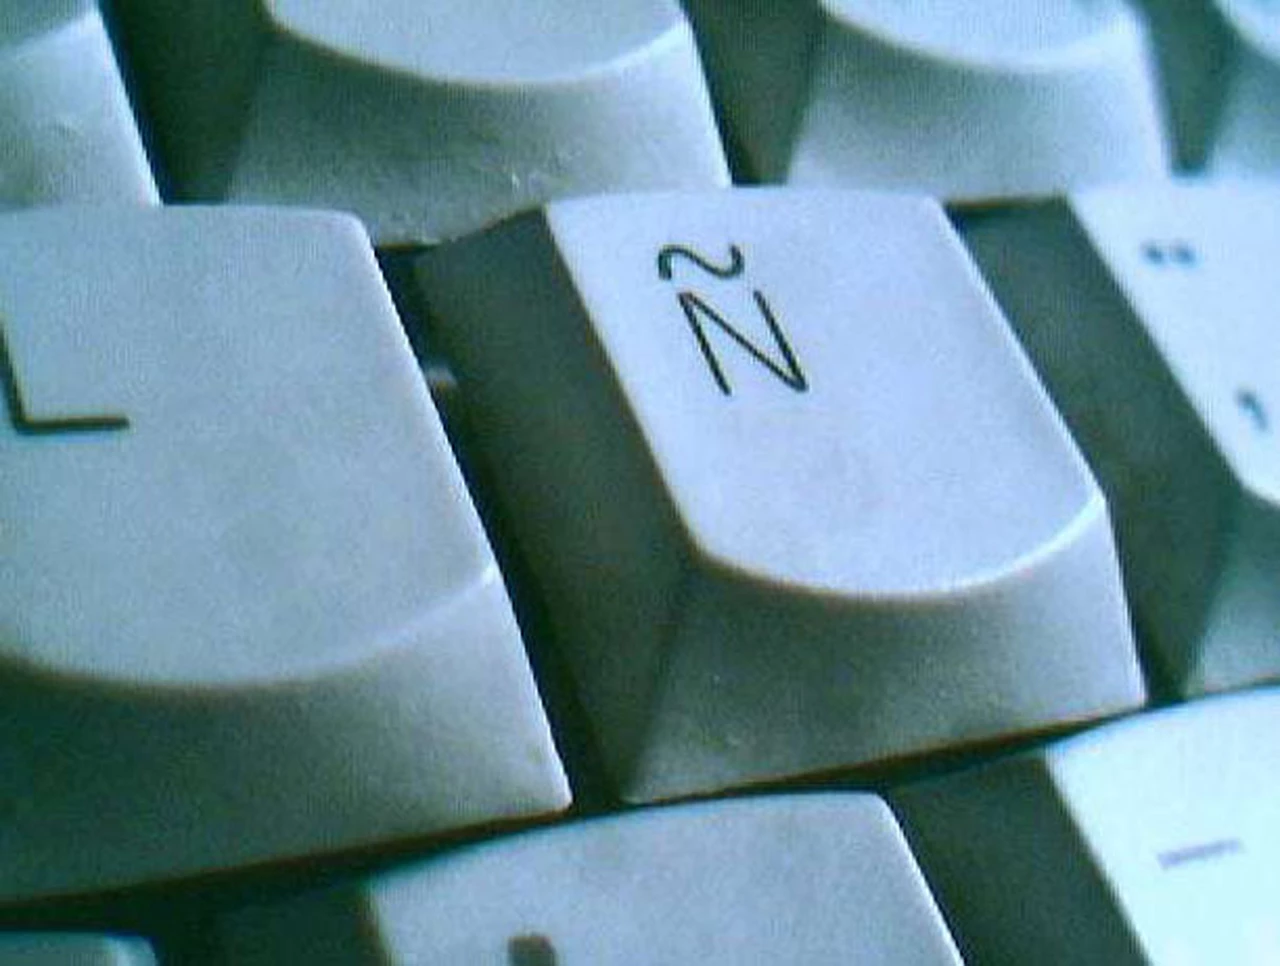 Un sitio web lo ayuda a escribir la letra "ñ" si no la tiene en su teclado